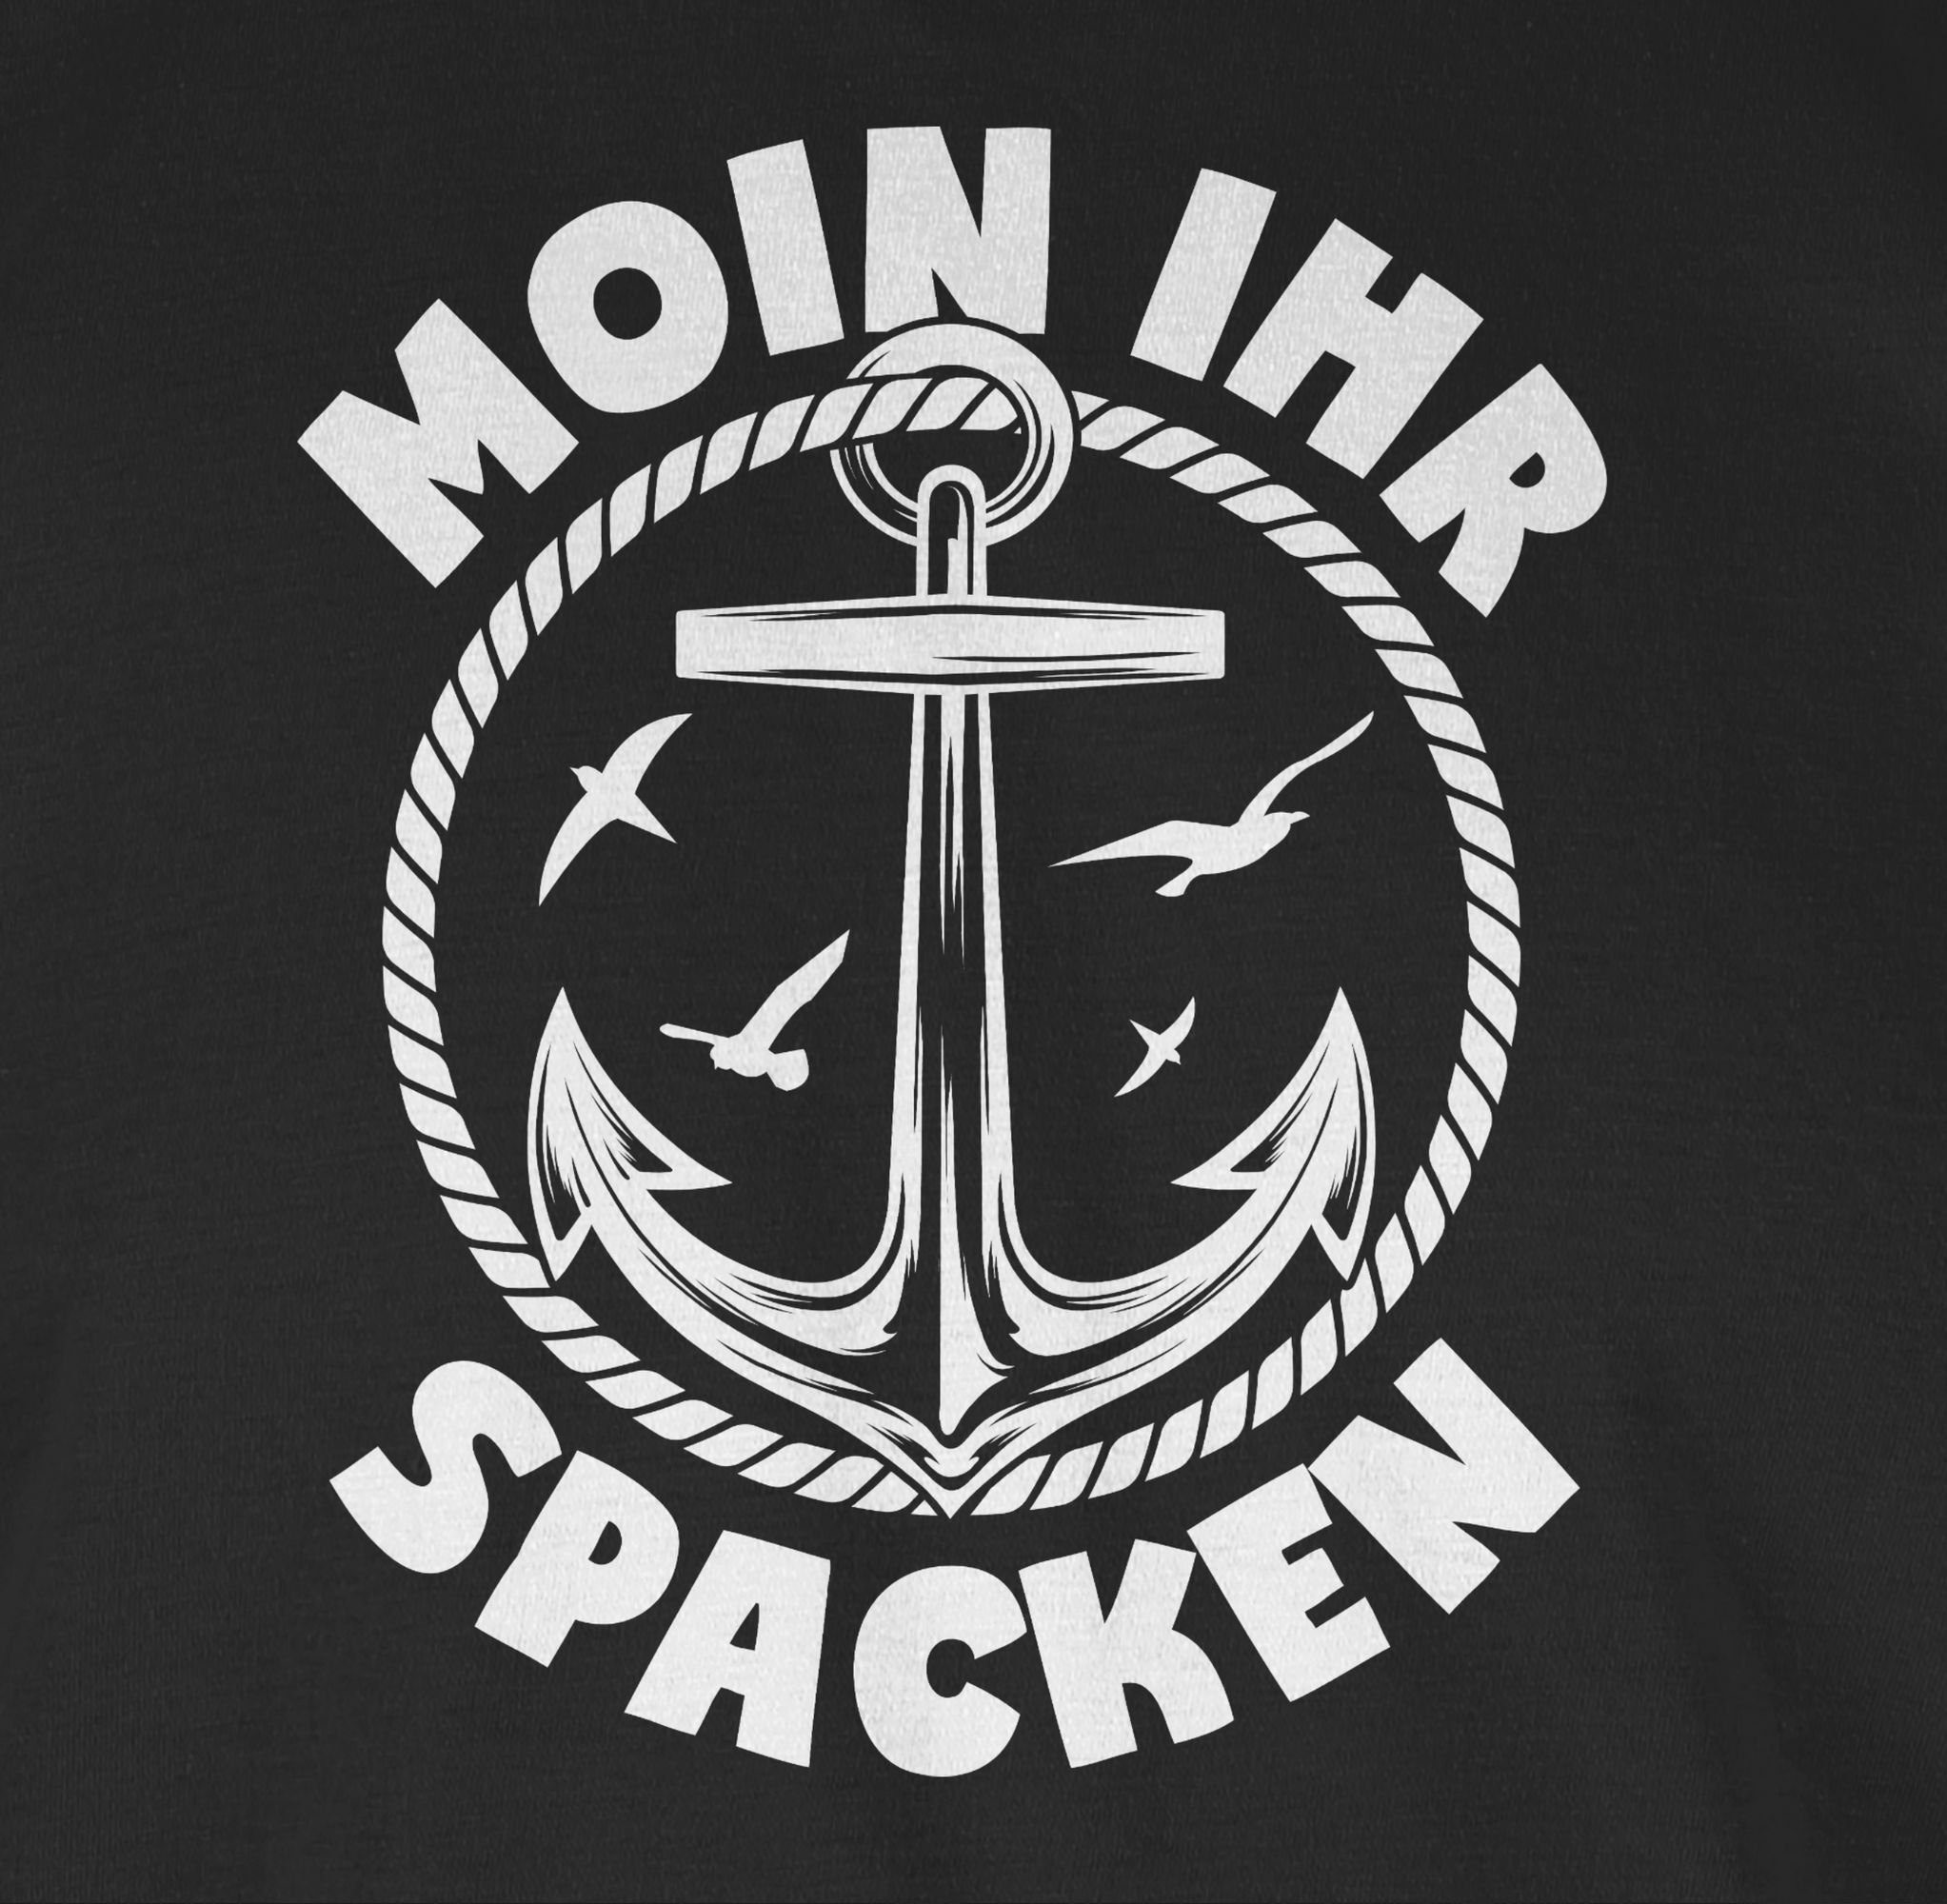 Moin Shirtracer mit - T-Shirt mit weiß Spacken 03 Spruch Schwarz Sprüche ihr Statement Anker